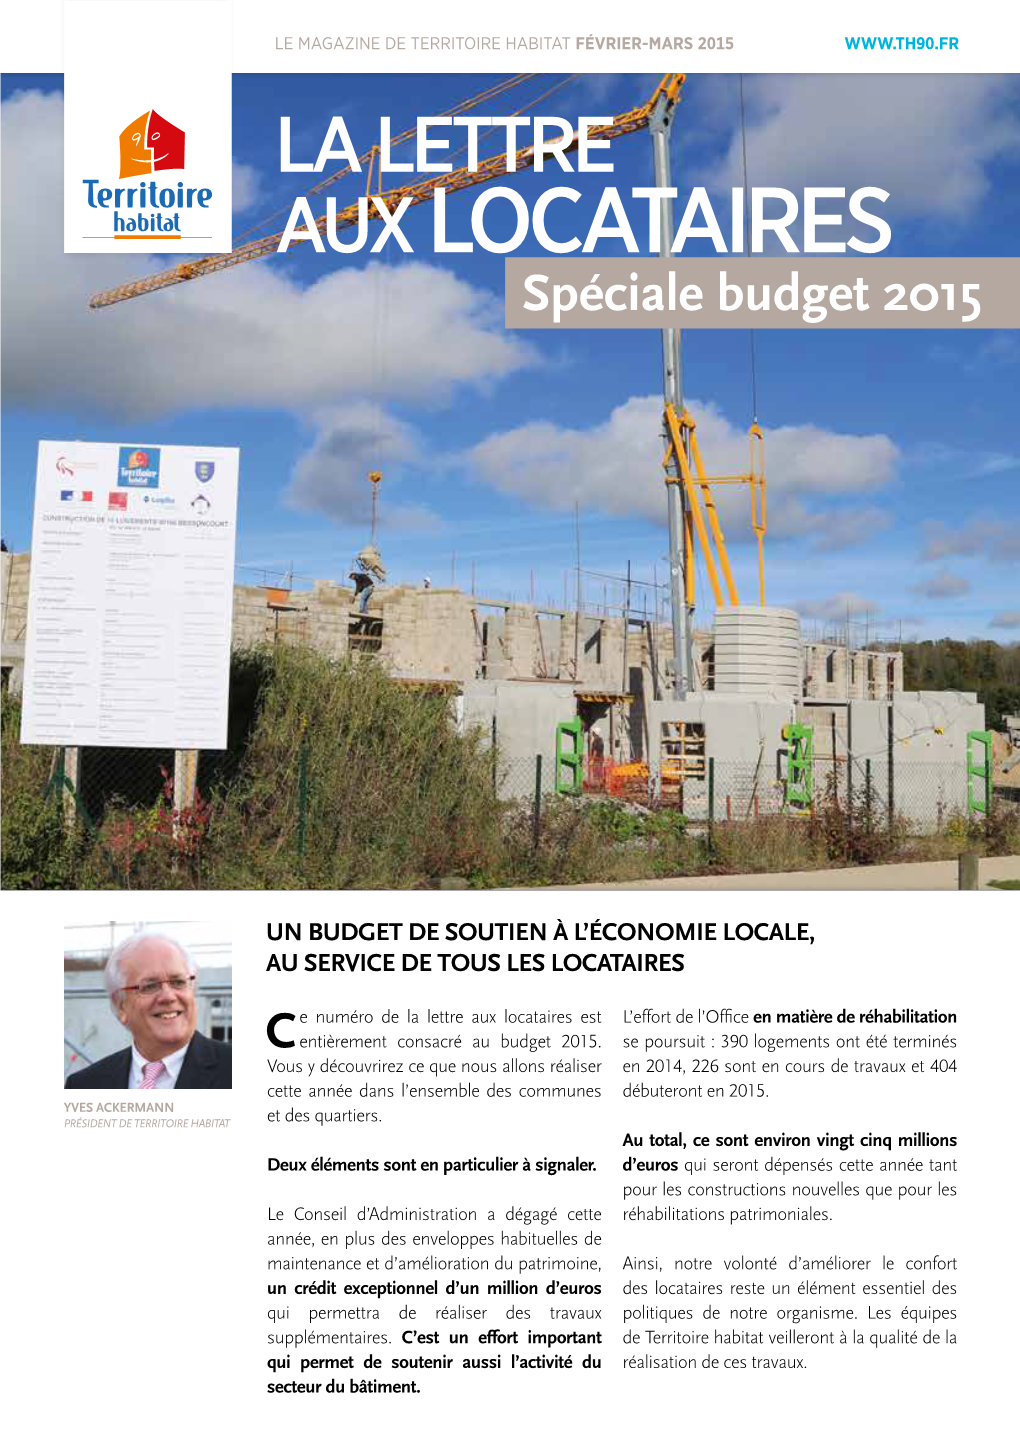 AUX LOCATAIRES Spéciale Budget 2015